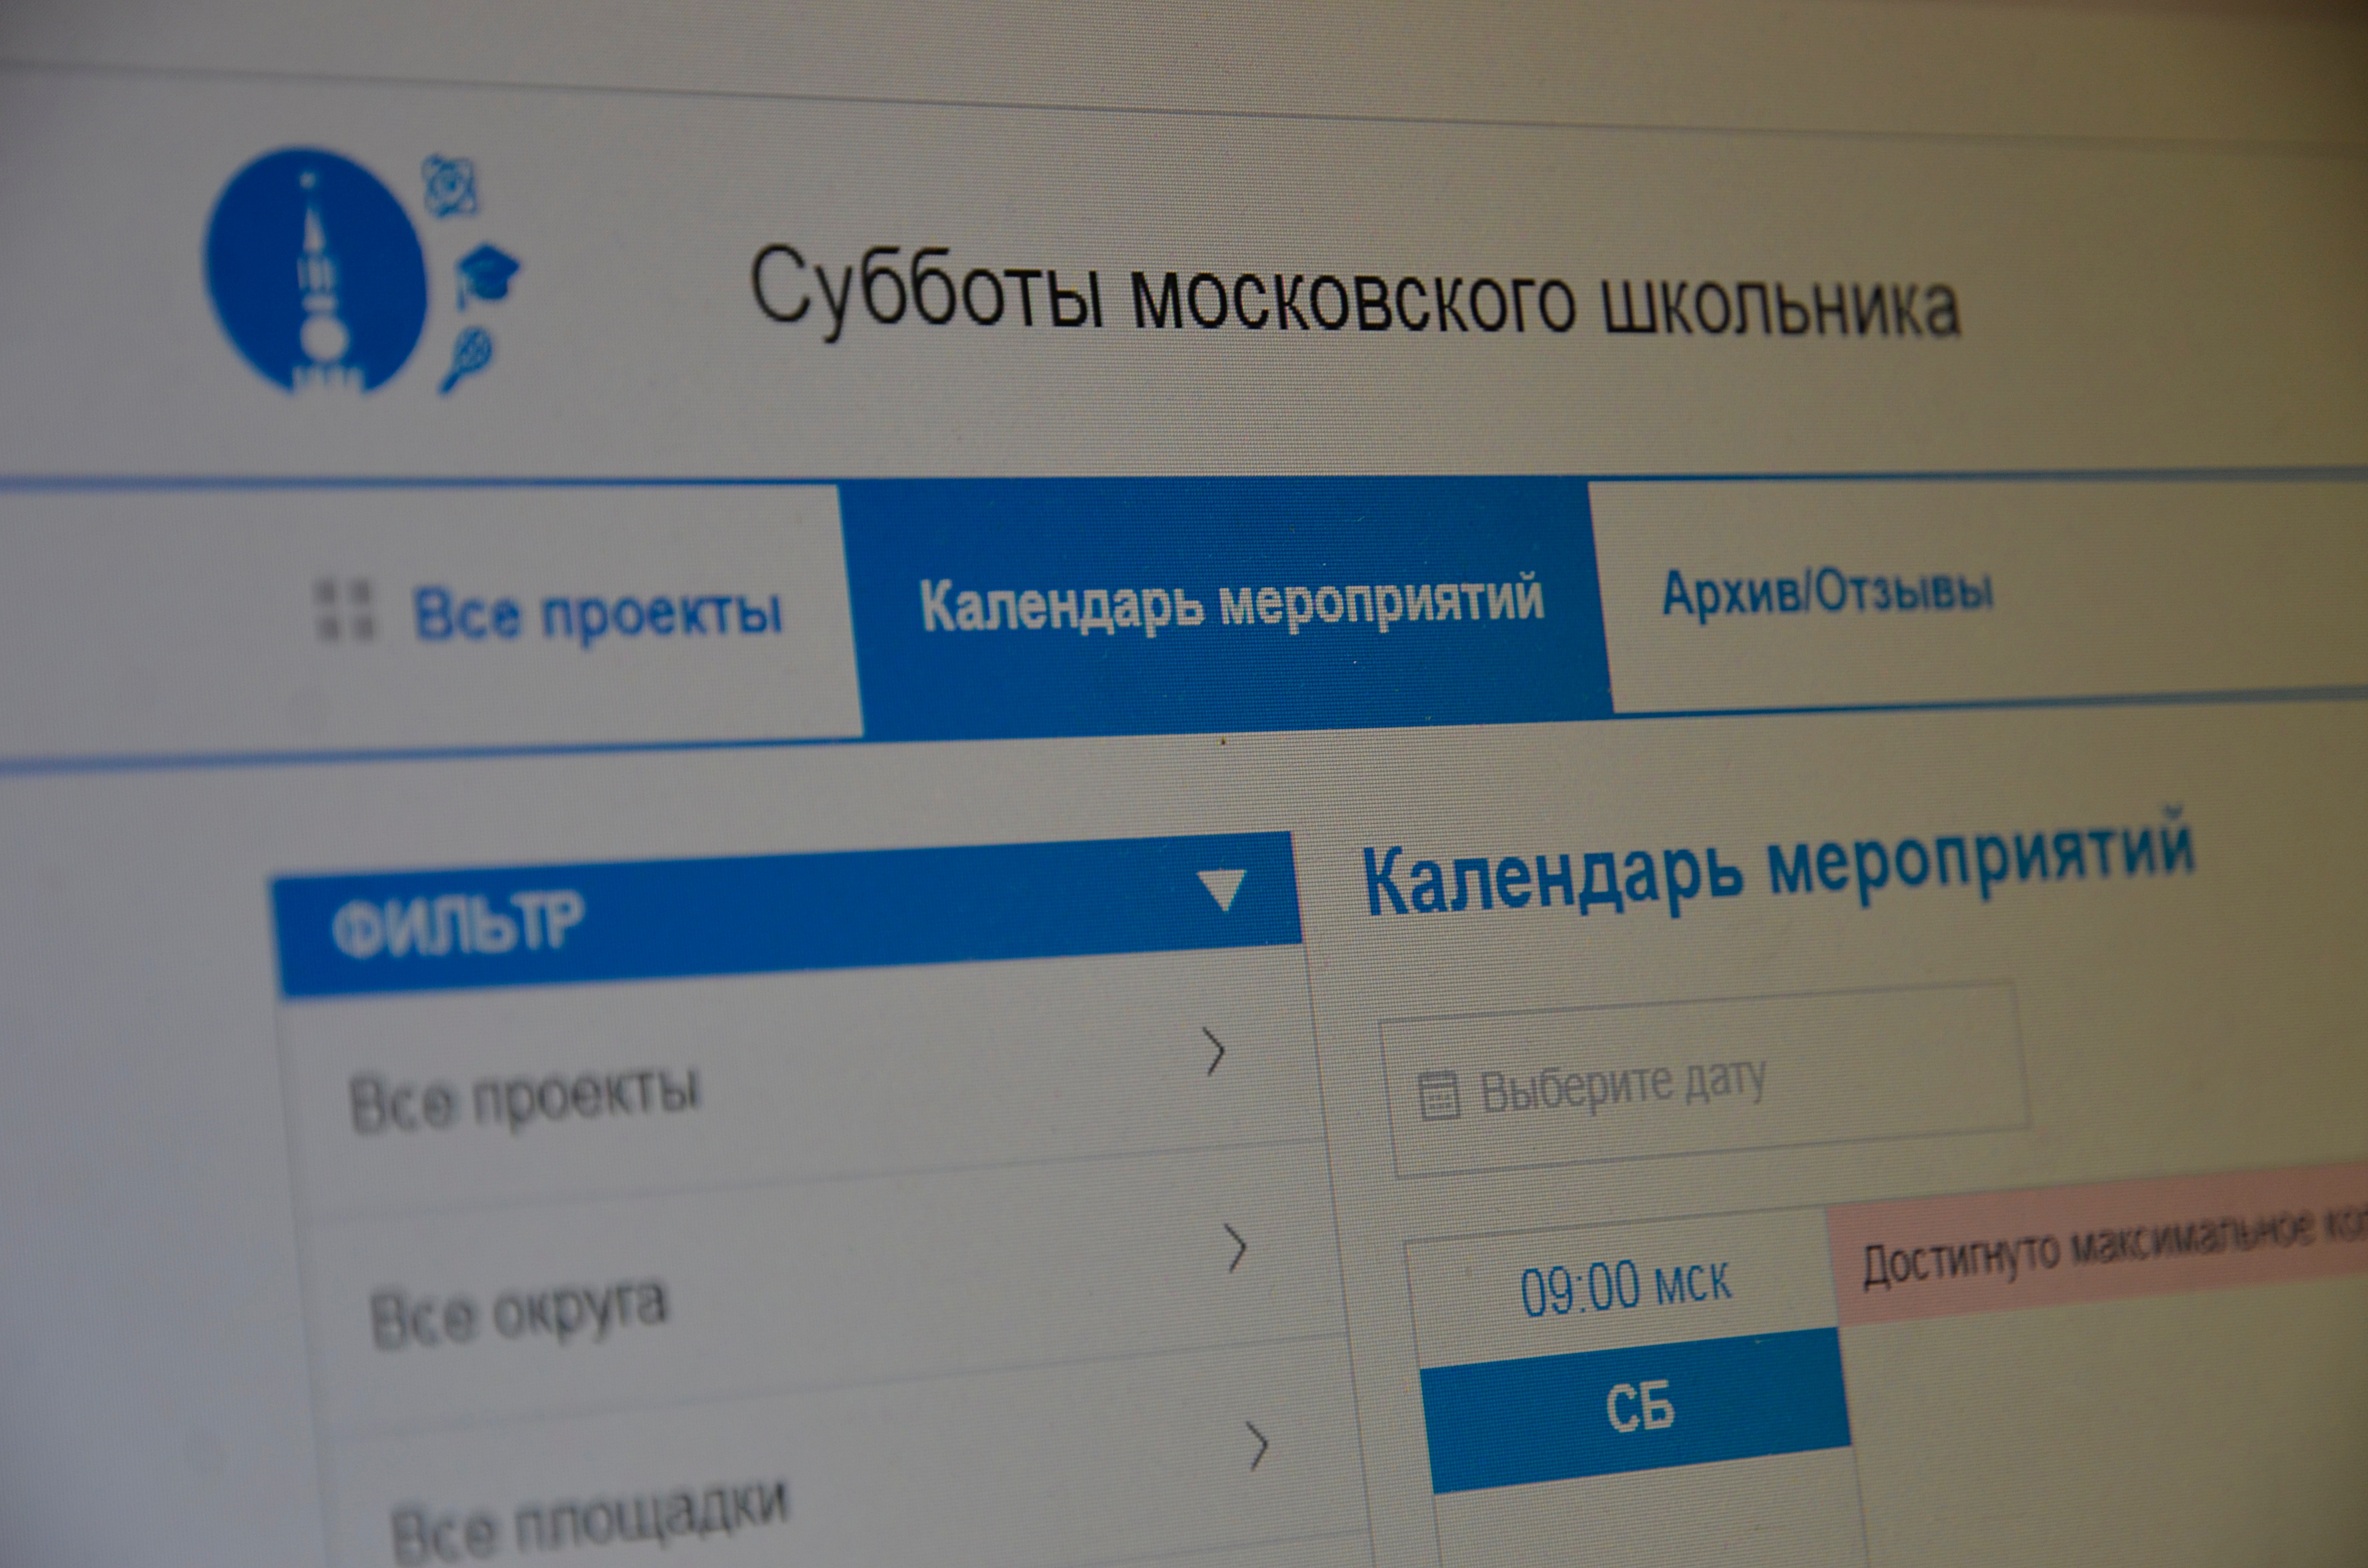 Школьники из поселения Михайлово-Ярцевское смогут принять участие в онлайн-викторине